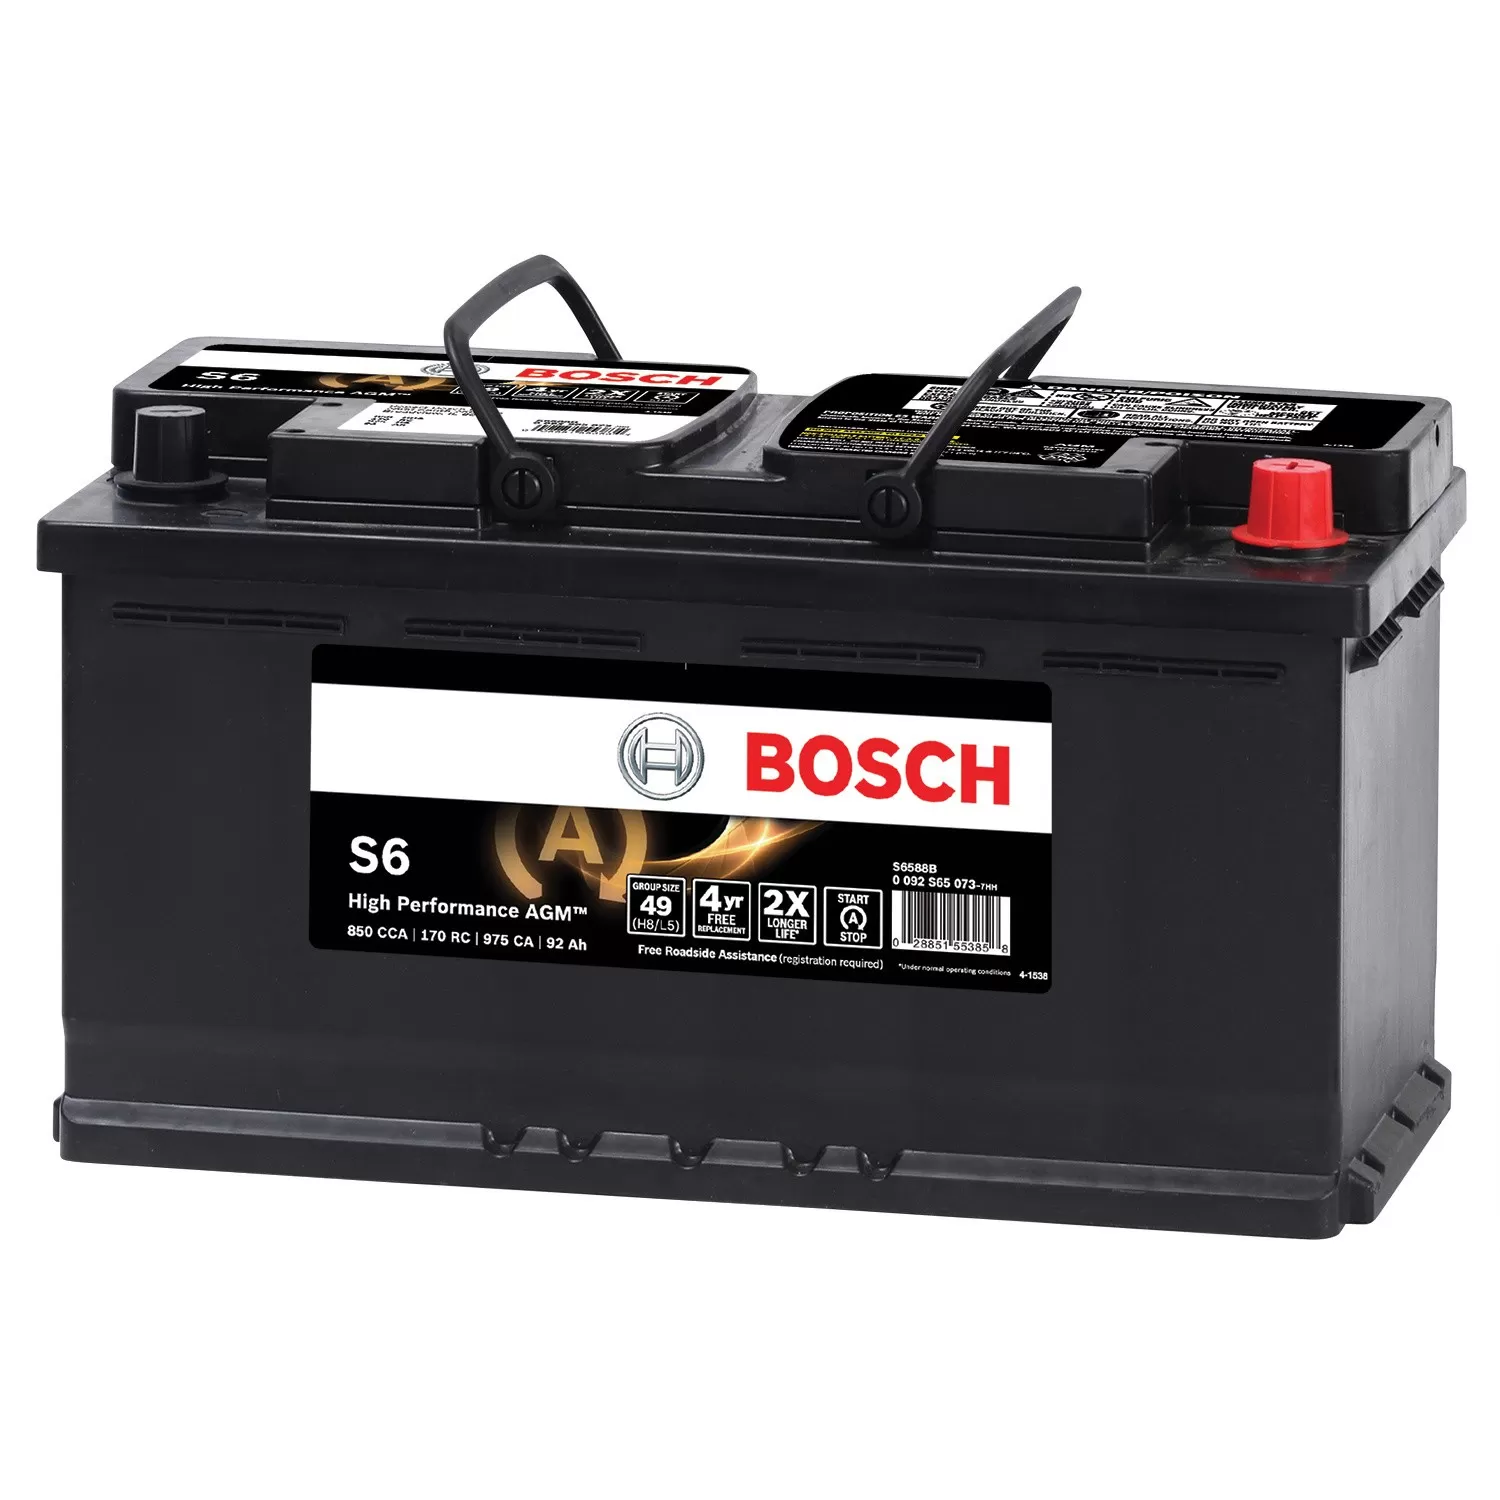 Bosch Battery - S6588B